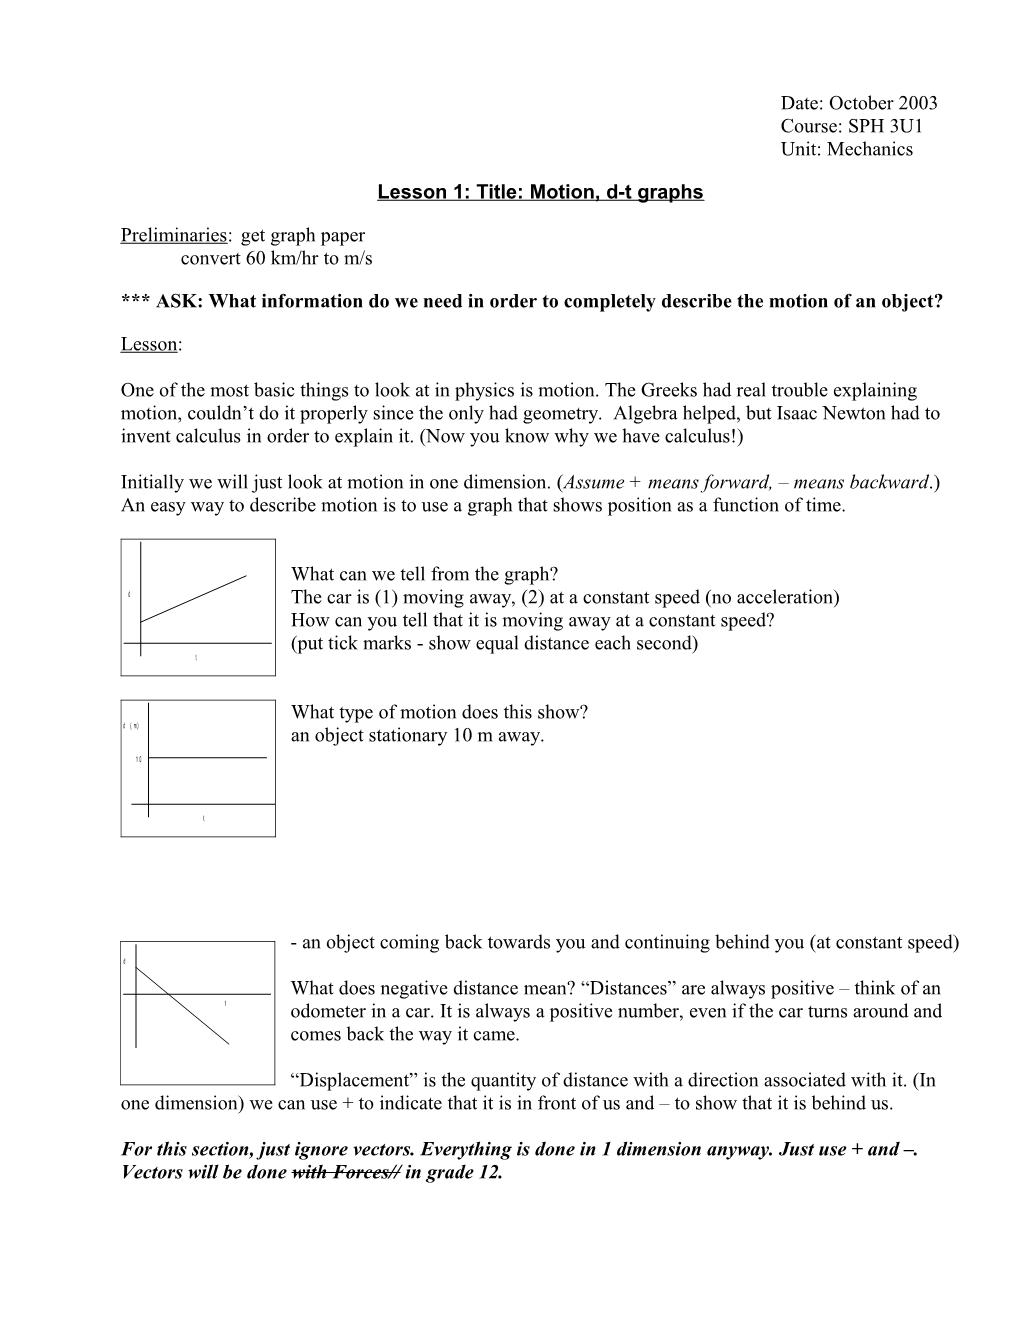 Lesson 1: Title: Motion, D-T Graphs